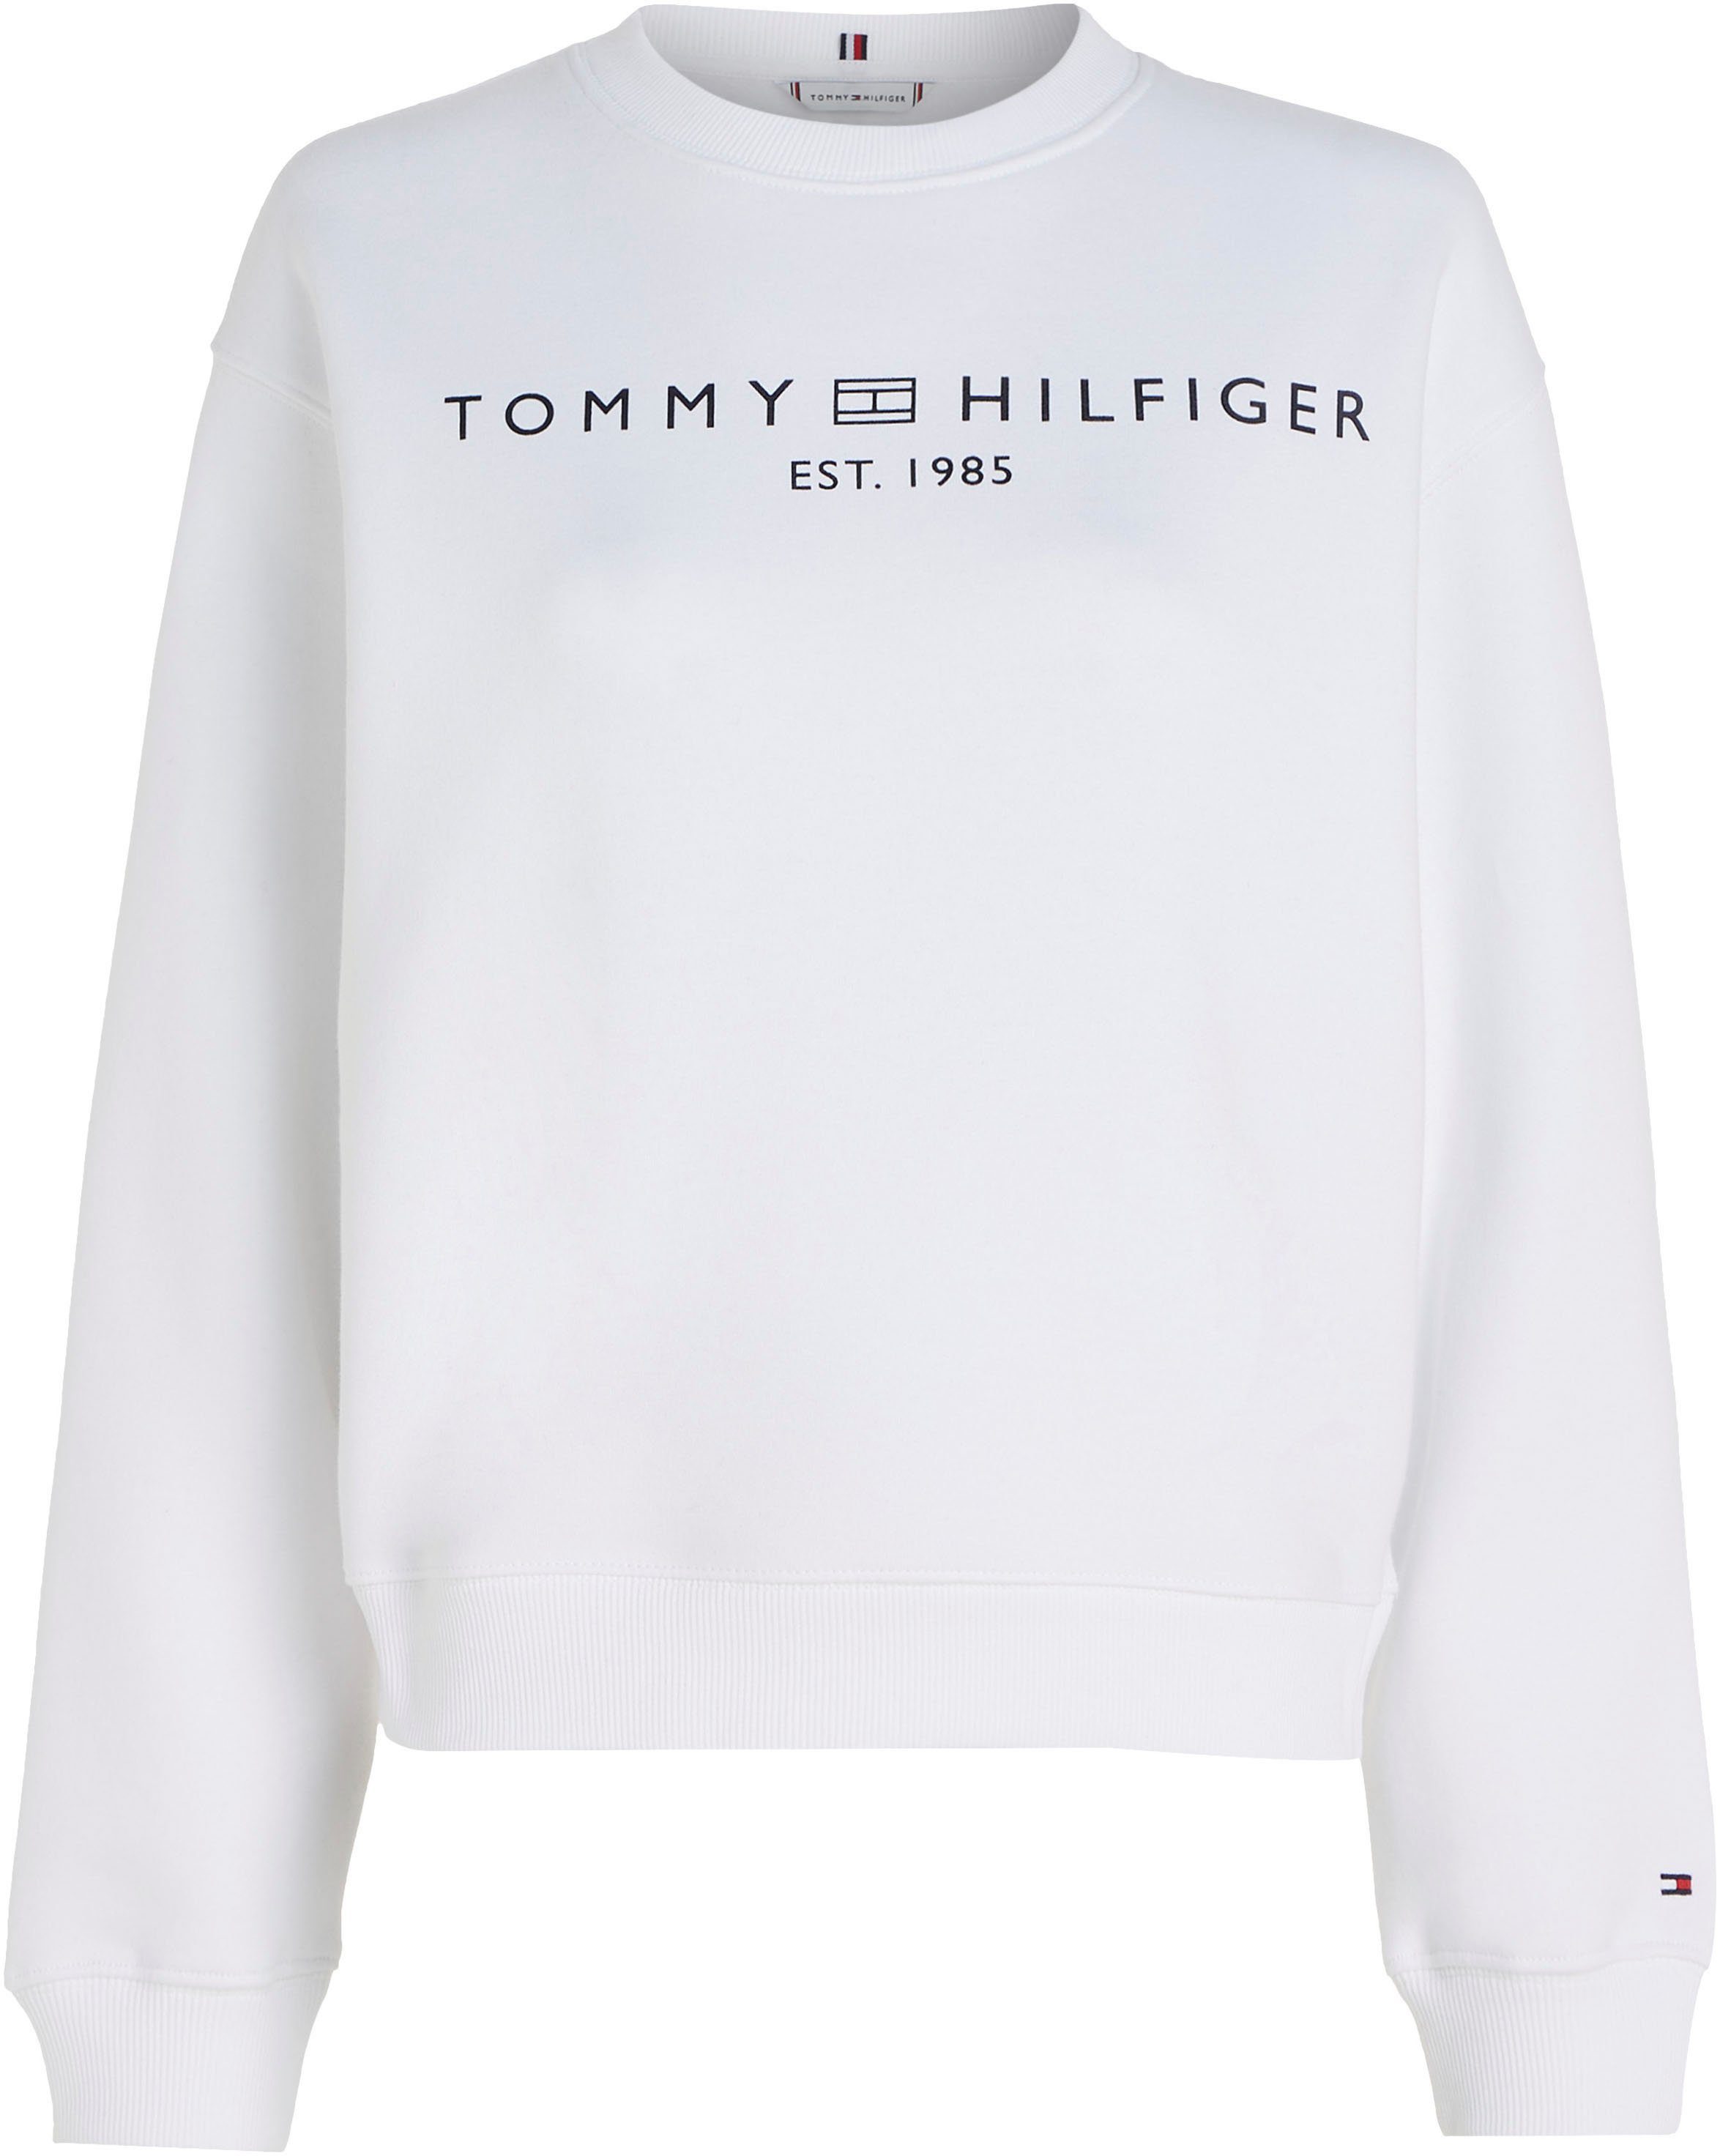 Tommy Hilfiger Curve Sweatshirt CRV MDRN REG CORP LOGO SWTSHRT